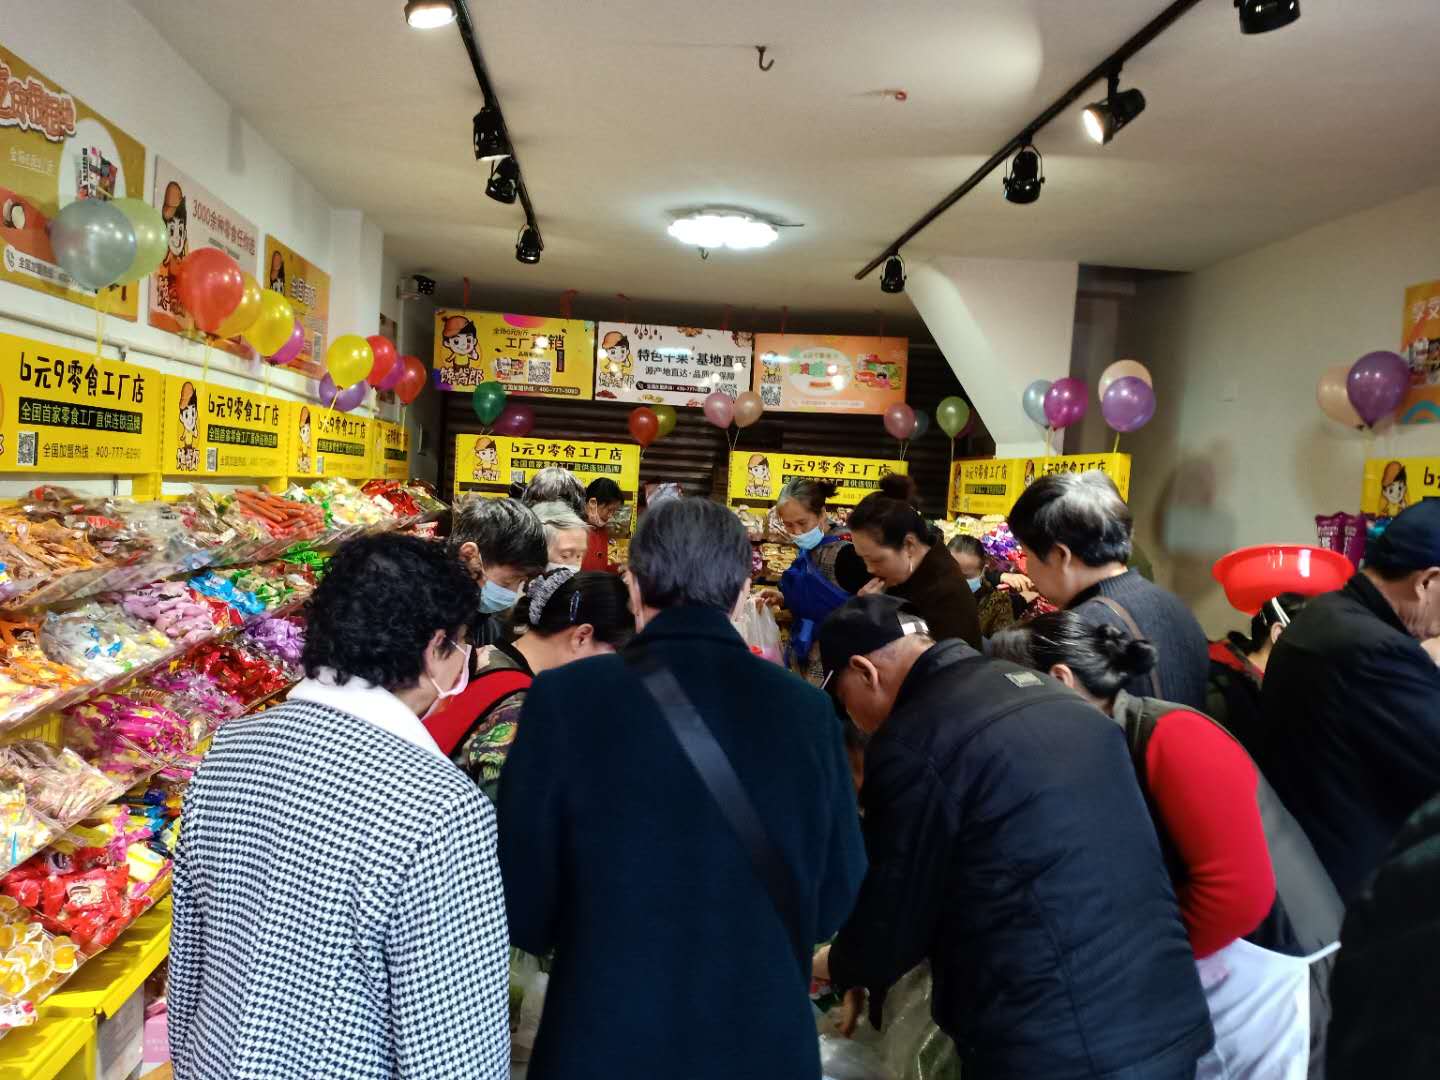 馋嘴郎荣县望景路6块9零食加盟店开业